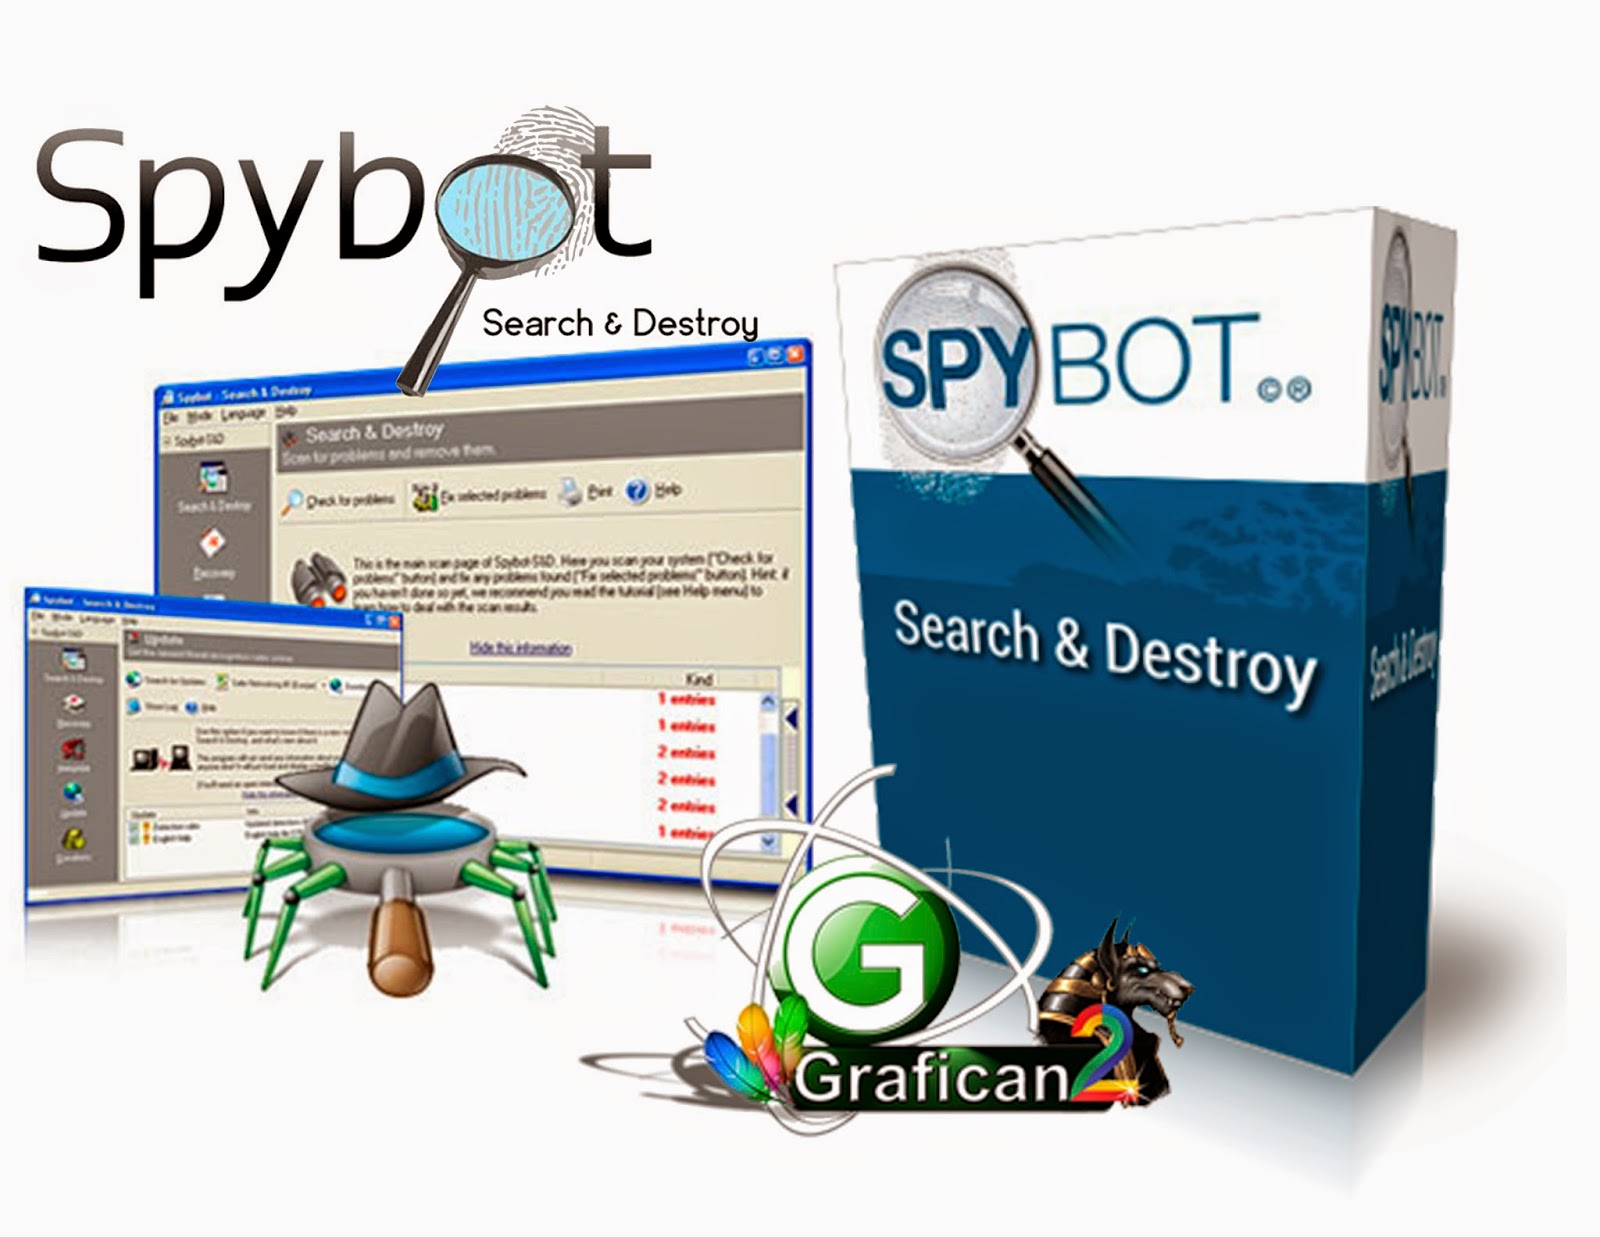 Spybot. Spybot - search & destroy. Spybot search & destroy иконка. Spybot отзывы. Spybot click